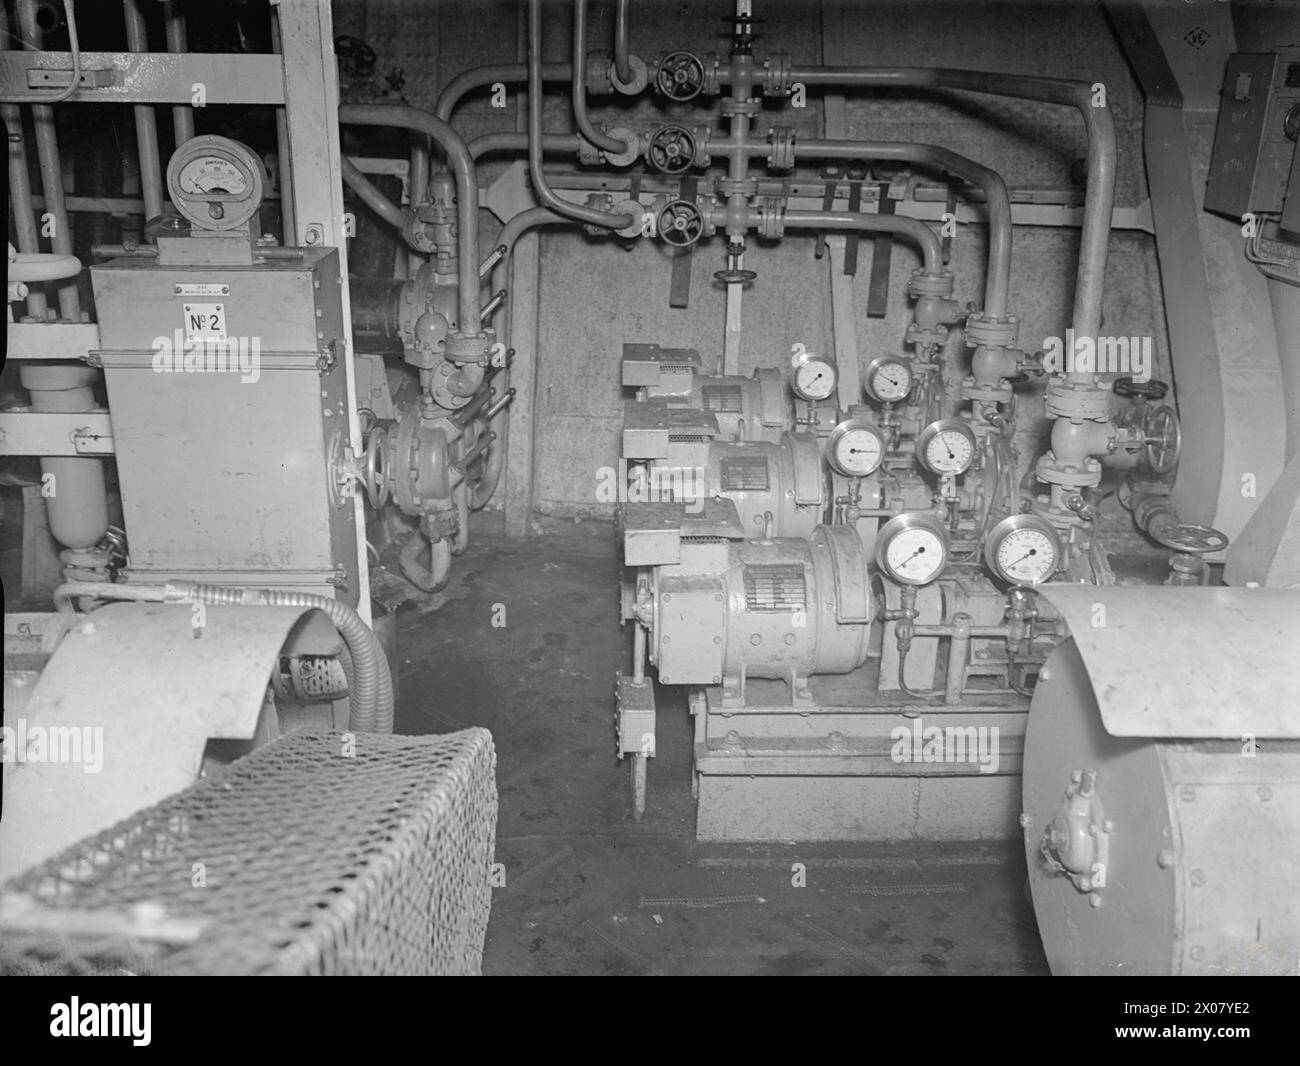 NELLA PORTAEREI BRITANNICA HMS INDEFATIGABLE. 22 FEBBRAIO 1944, ROSYTH. - Nella stanza CO2. Sul lato destro sono visibili tre pompe di circolazione che forniscono acqua salata ai tre condensatori. Il lato sinistro è il motorino di avviamento del compressore NO2 ad azionamento elettrico Foto Stock